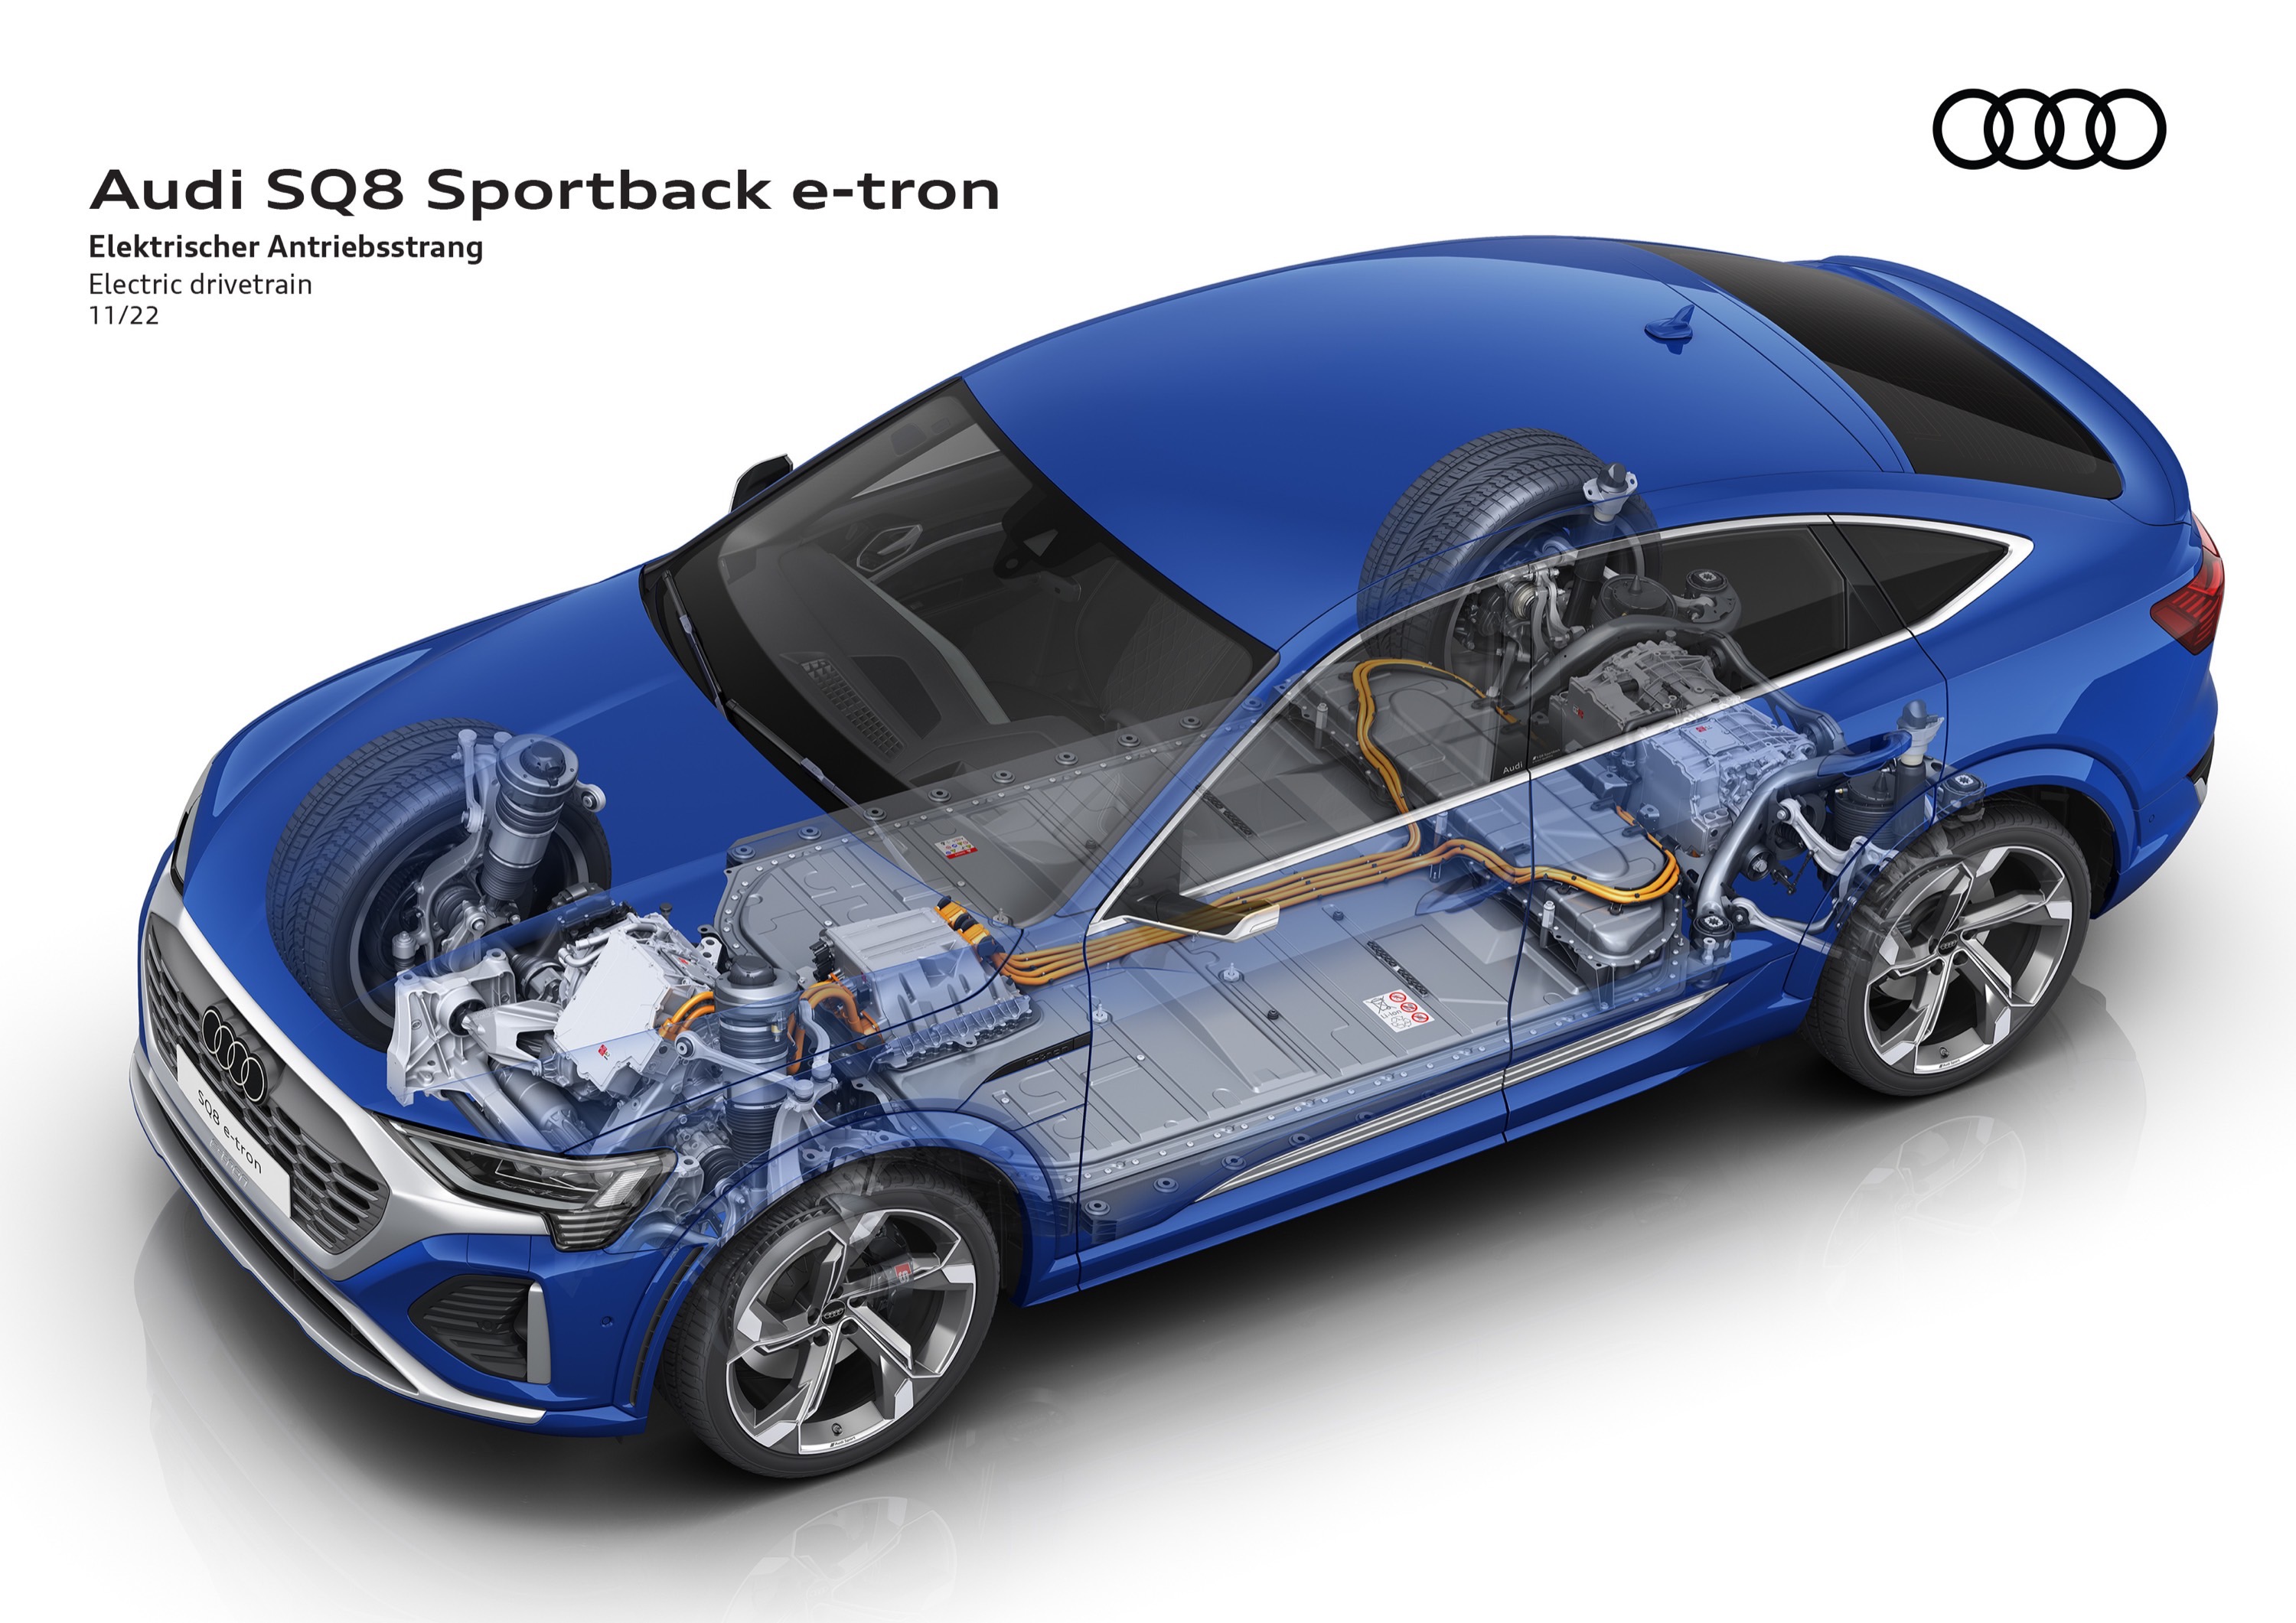 Audi SQ8 Sportback e-tron quattro